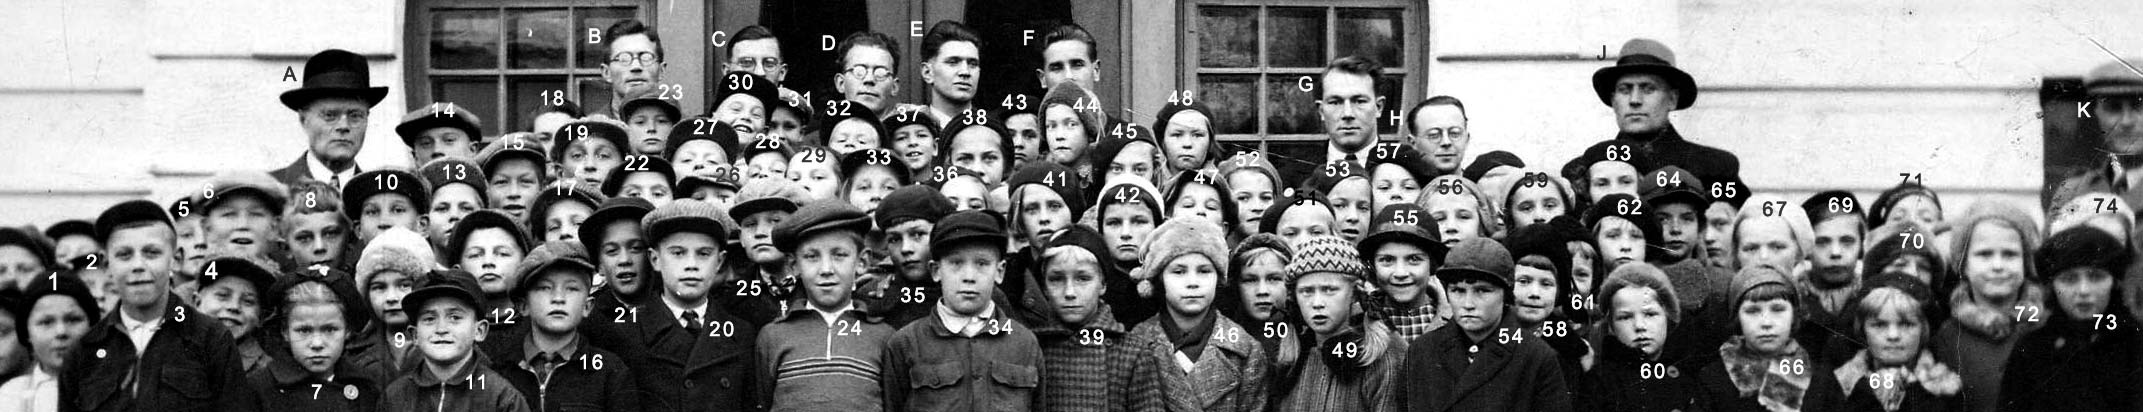 Normalskolans klass 1 1955-56